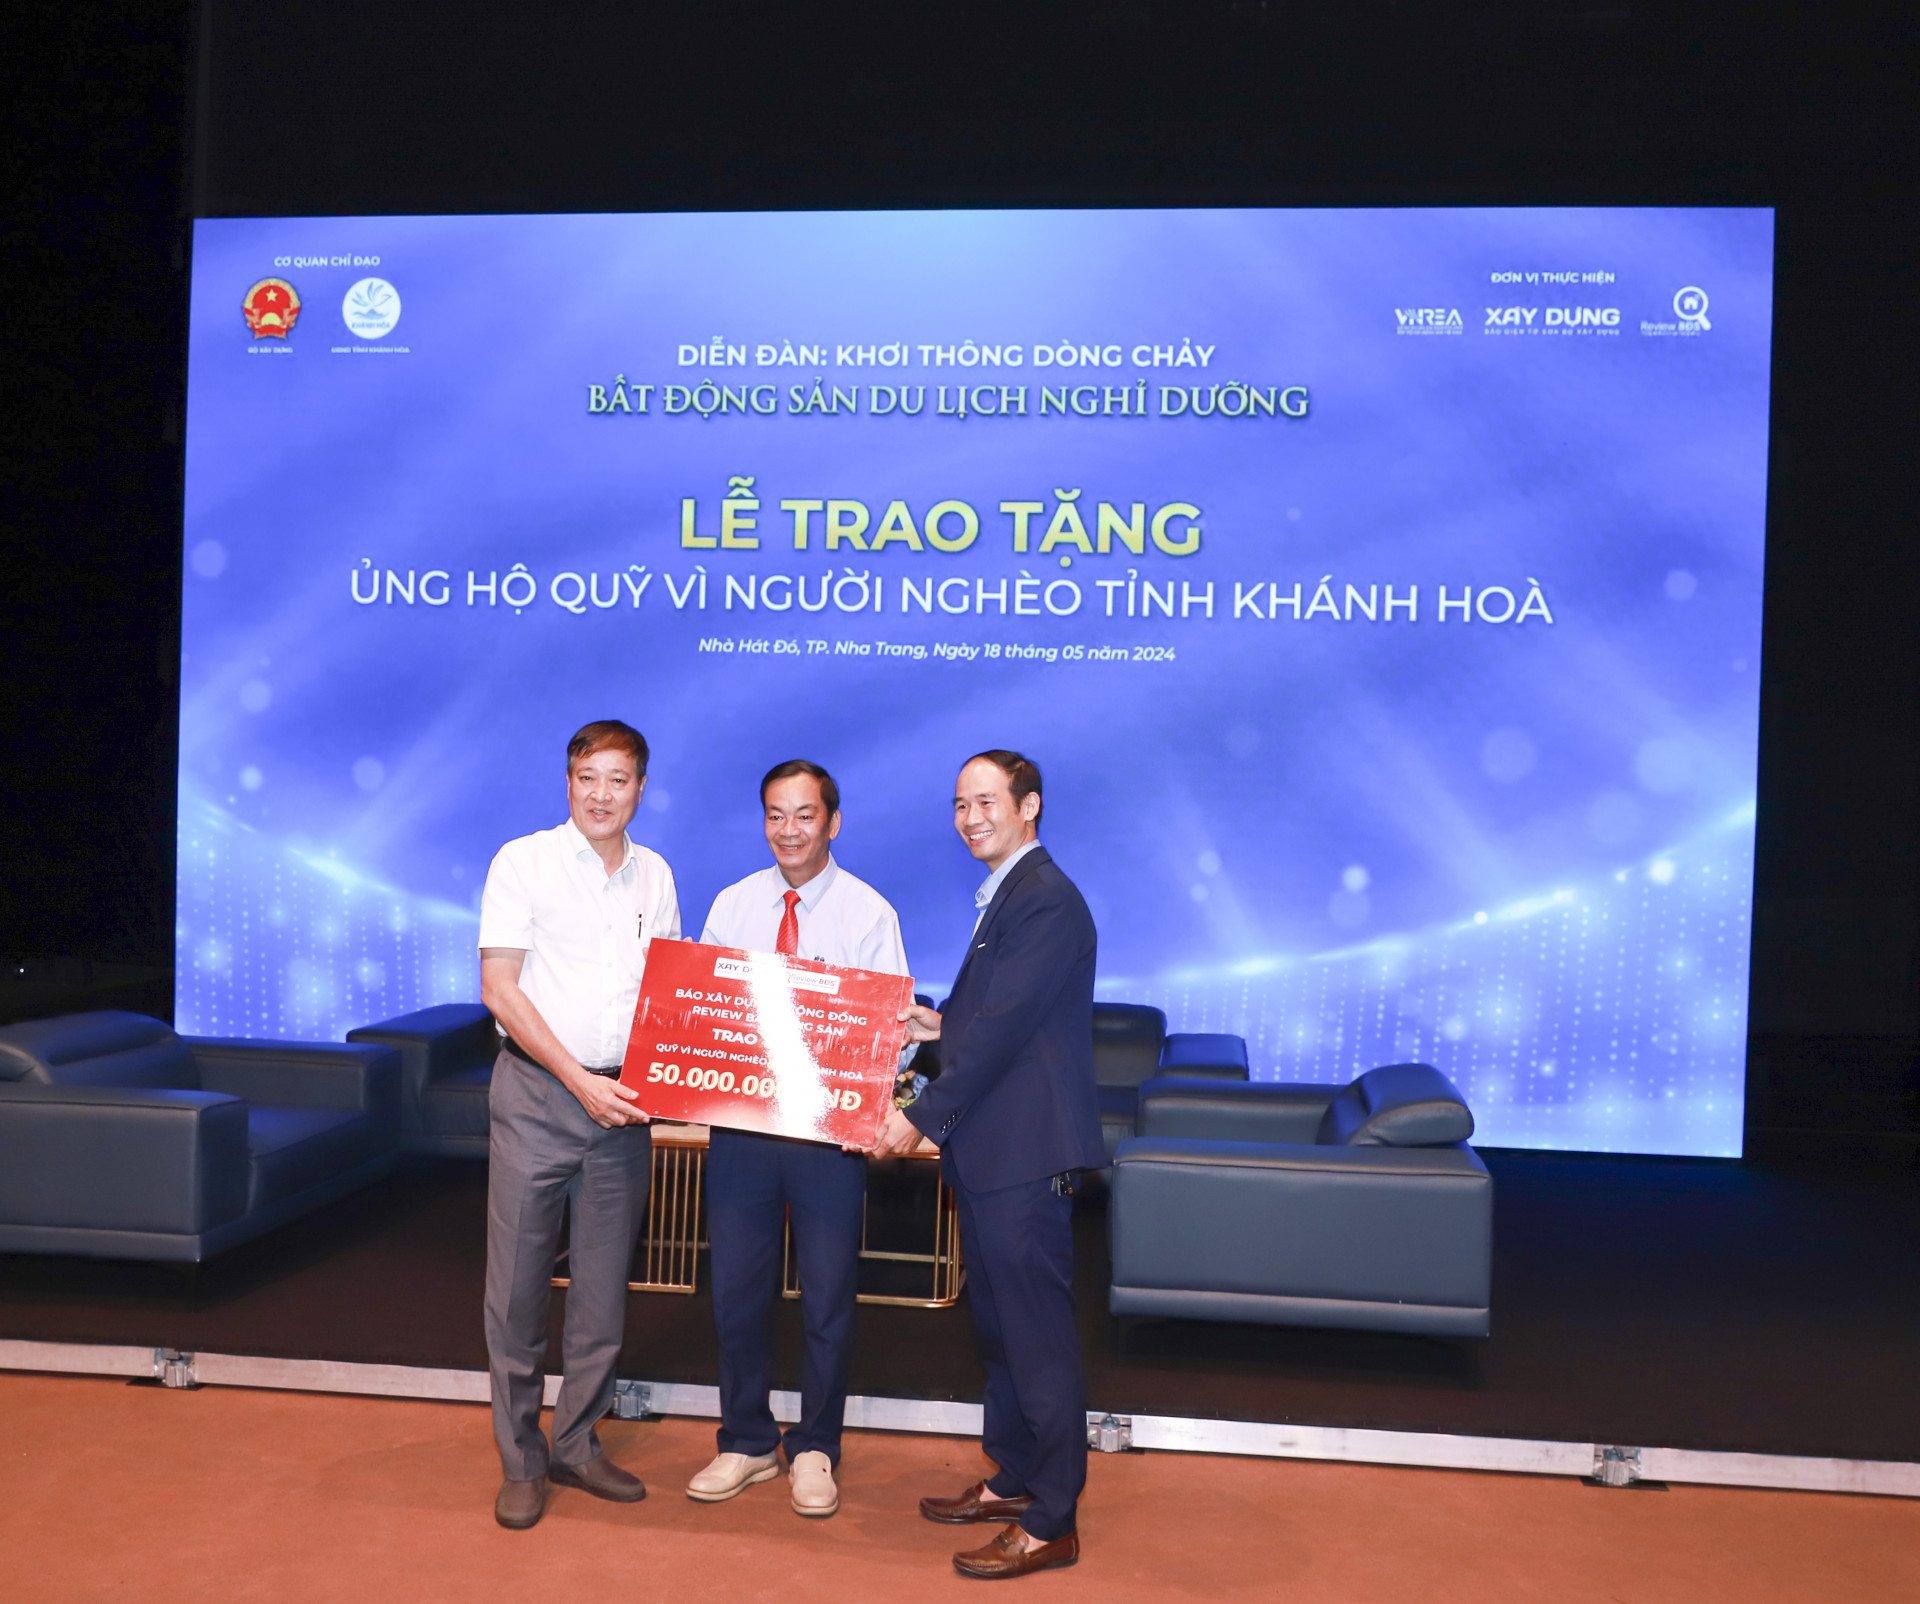 Đại diện Báo Xây dựng và Cộng đồng Review bất động sản gửi tặng 50 triệu đồng ủng hộ quỹ vì người nghèo tỉnh Khánh Hoà.